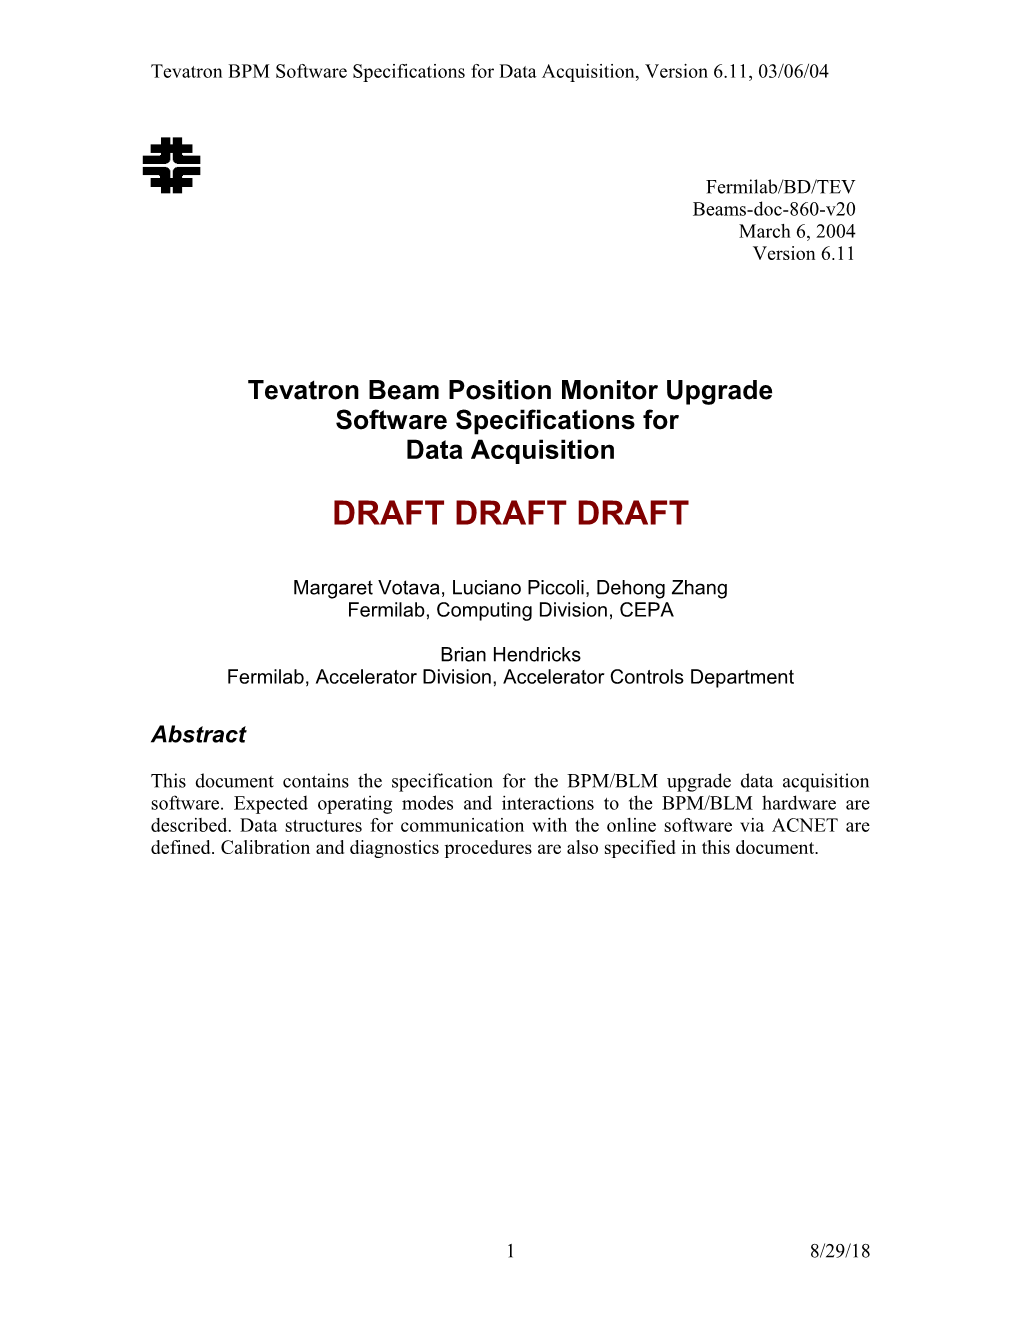 Tevatron BPM Requirements